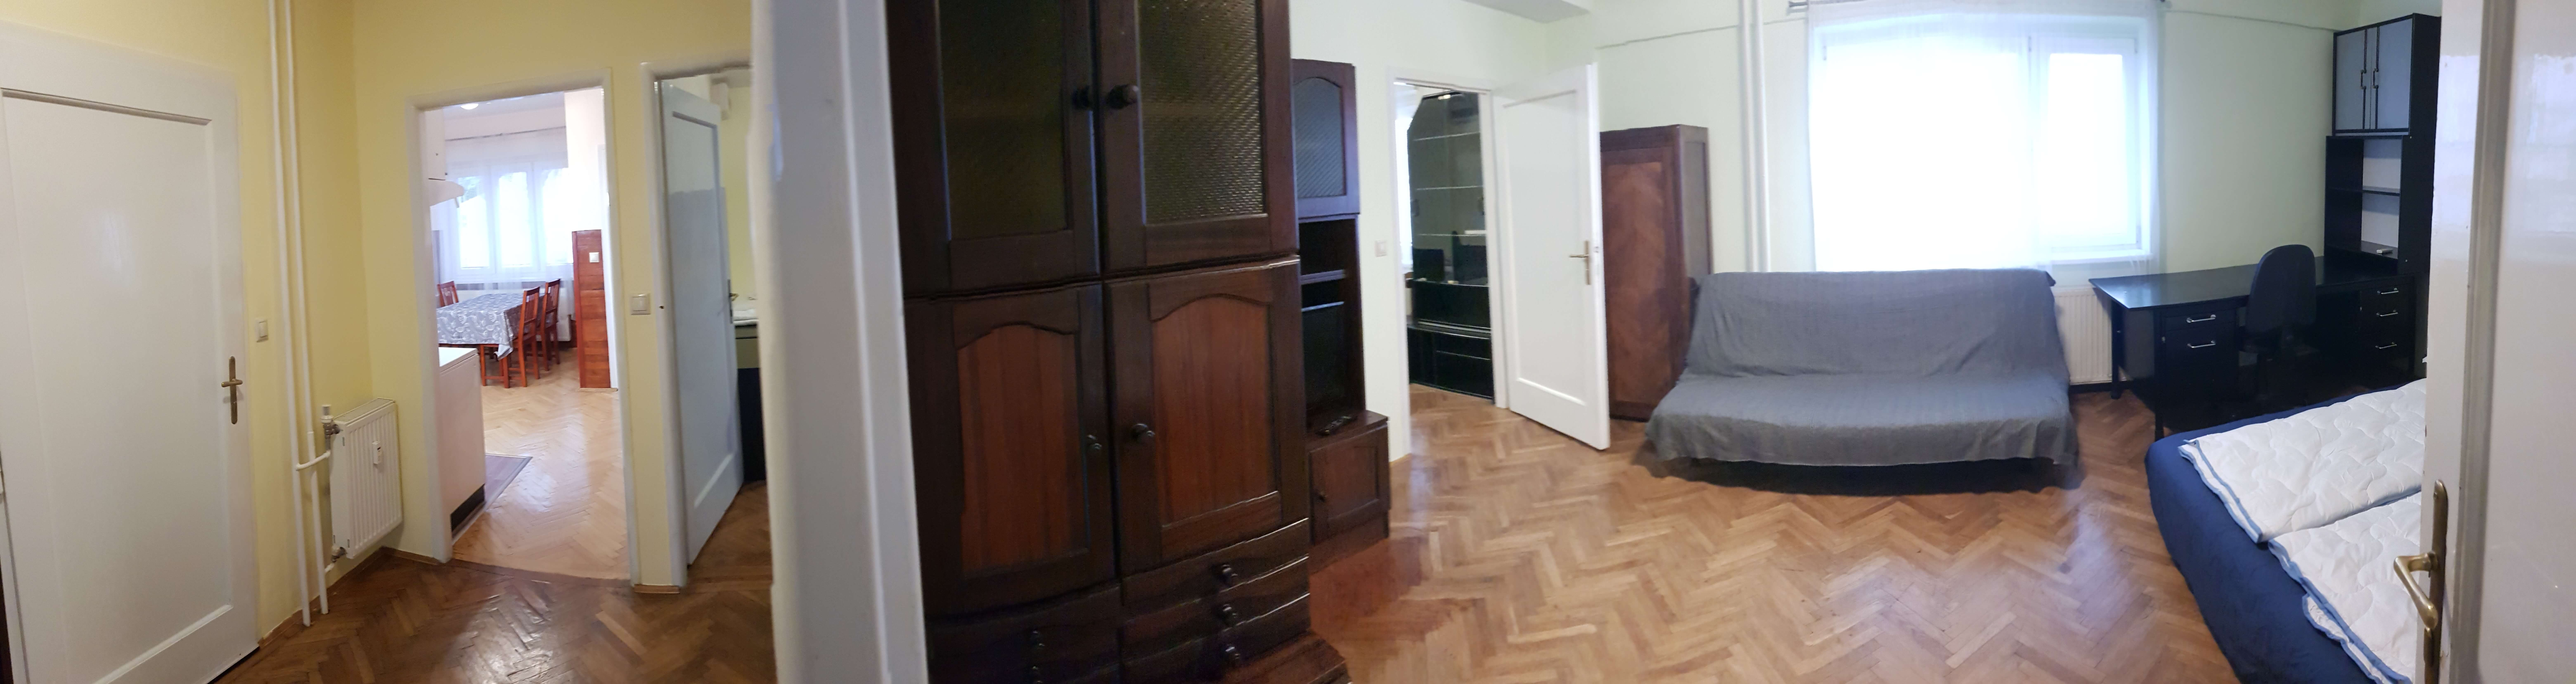 Prenajaté: Prenájom jednej izby v 2 izb. byte, staré mesto, Šancová ulica, Bratislava, 80m2, zariadený-9